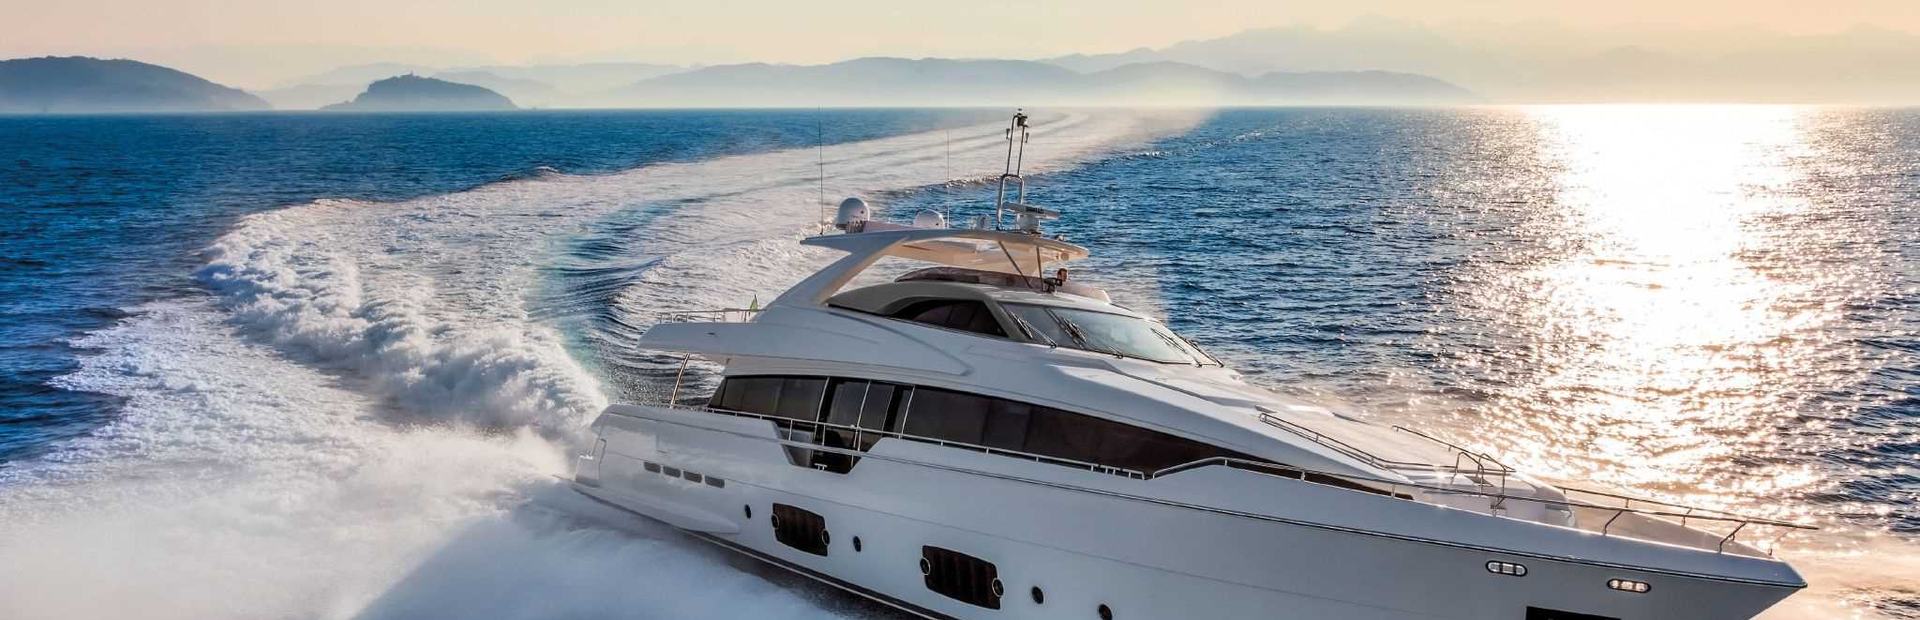 Ferretti 960 Yacht